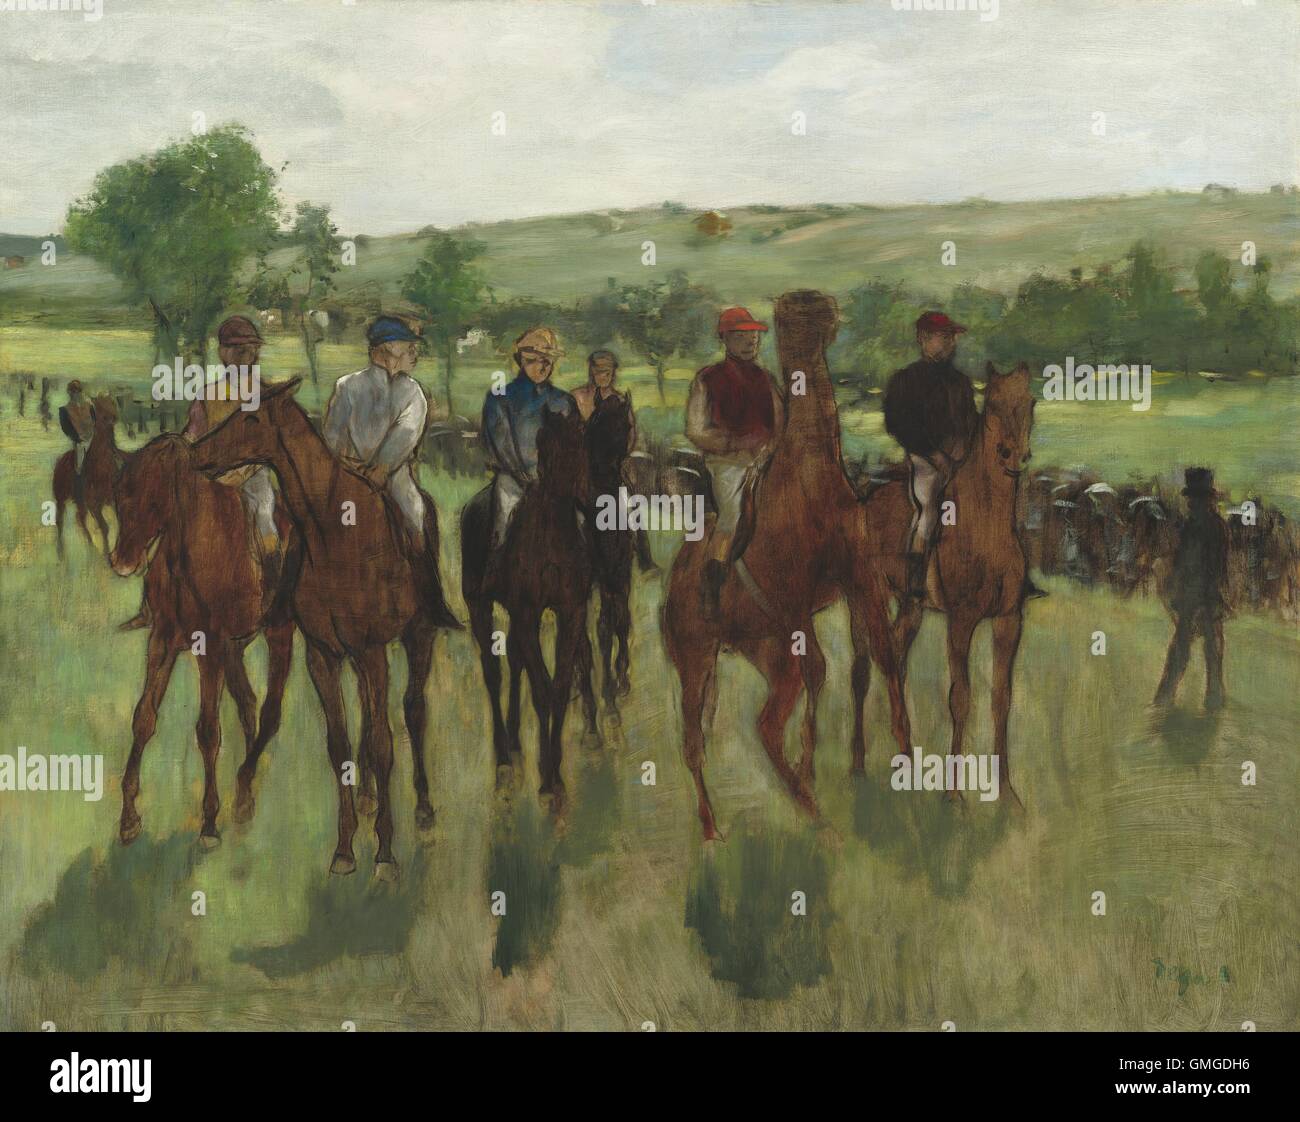 I Cavalieri di Edgar Degas, 1885, impressionista francese pittura, olio su tela. Degas catturato un momento di passaggio con il movimento dei cavalli e i colori dei fantini' uniformi (BSLOC 2016 5 157) Foto Stock